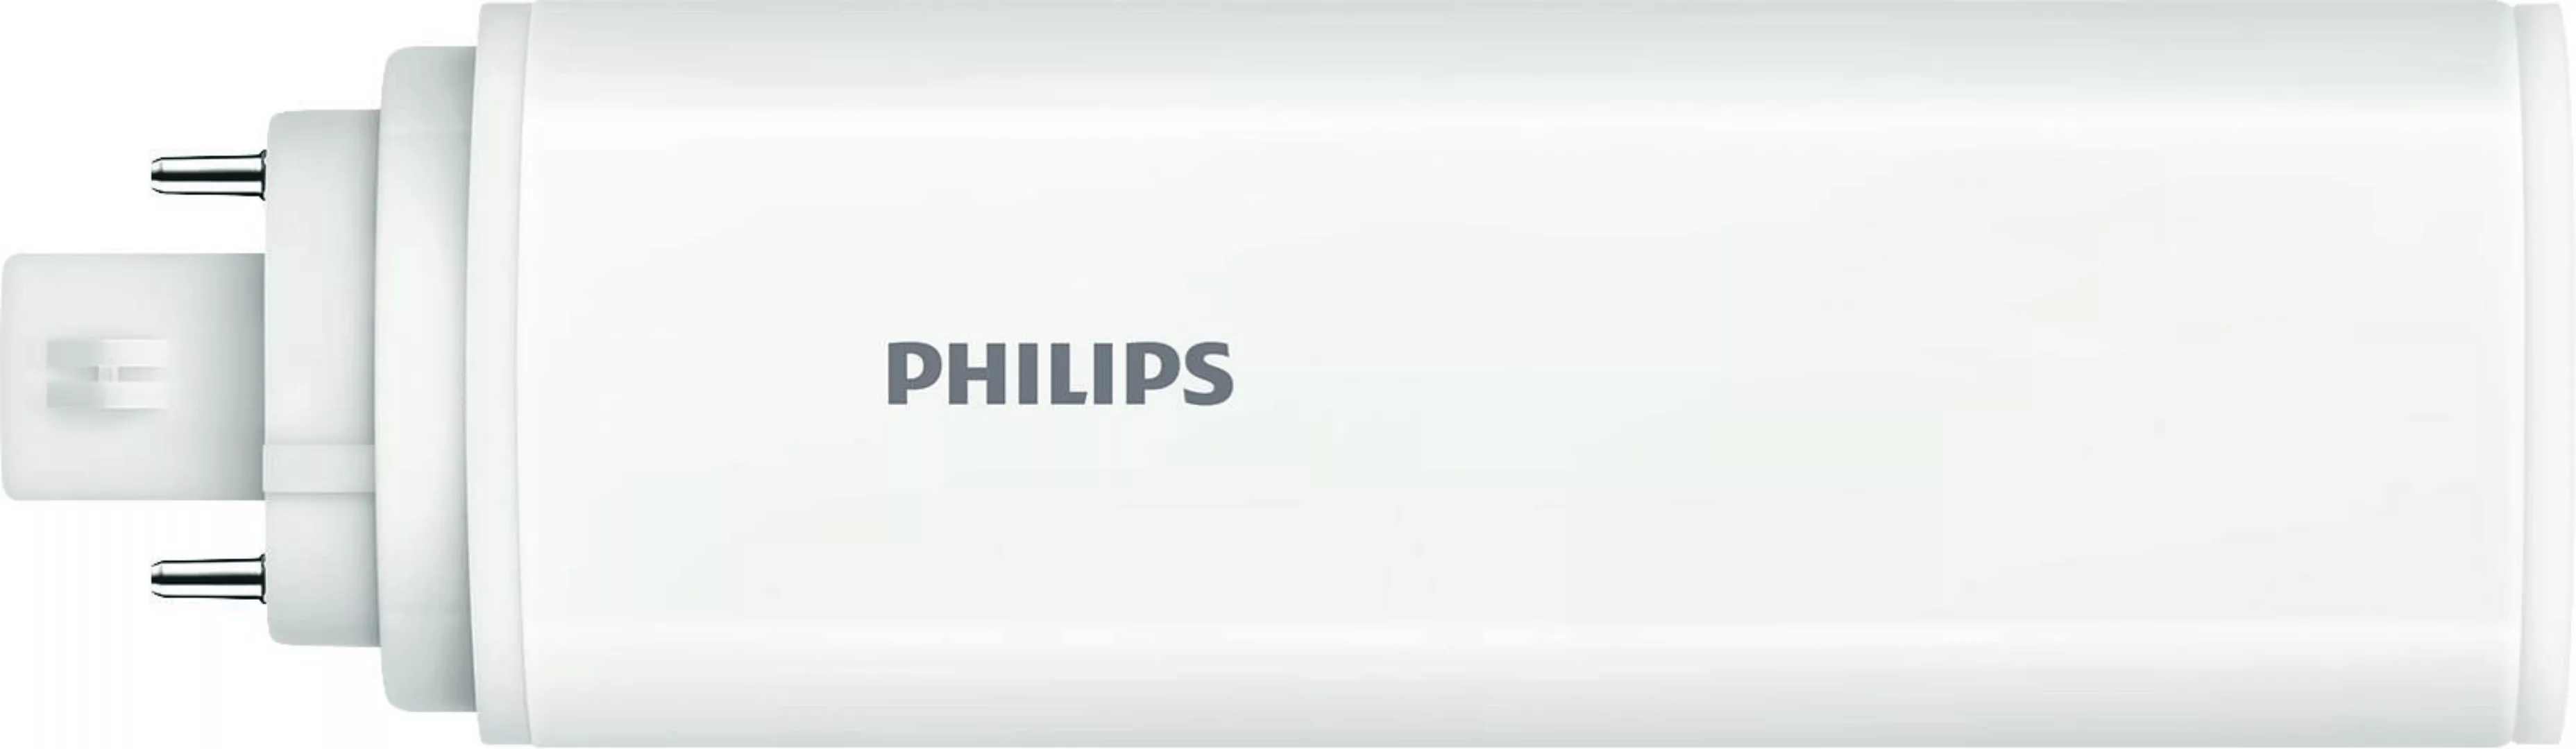 Philips Lighting LED-Kompaktlampe f. EVG G24Q-3, 840 CoreLEDPLT #48782600 günstig online kaufen